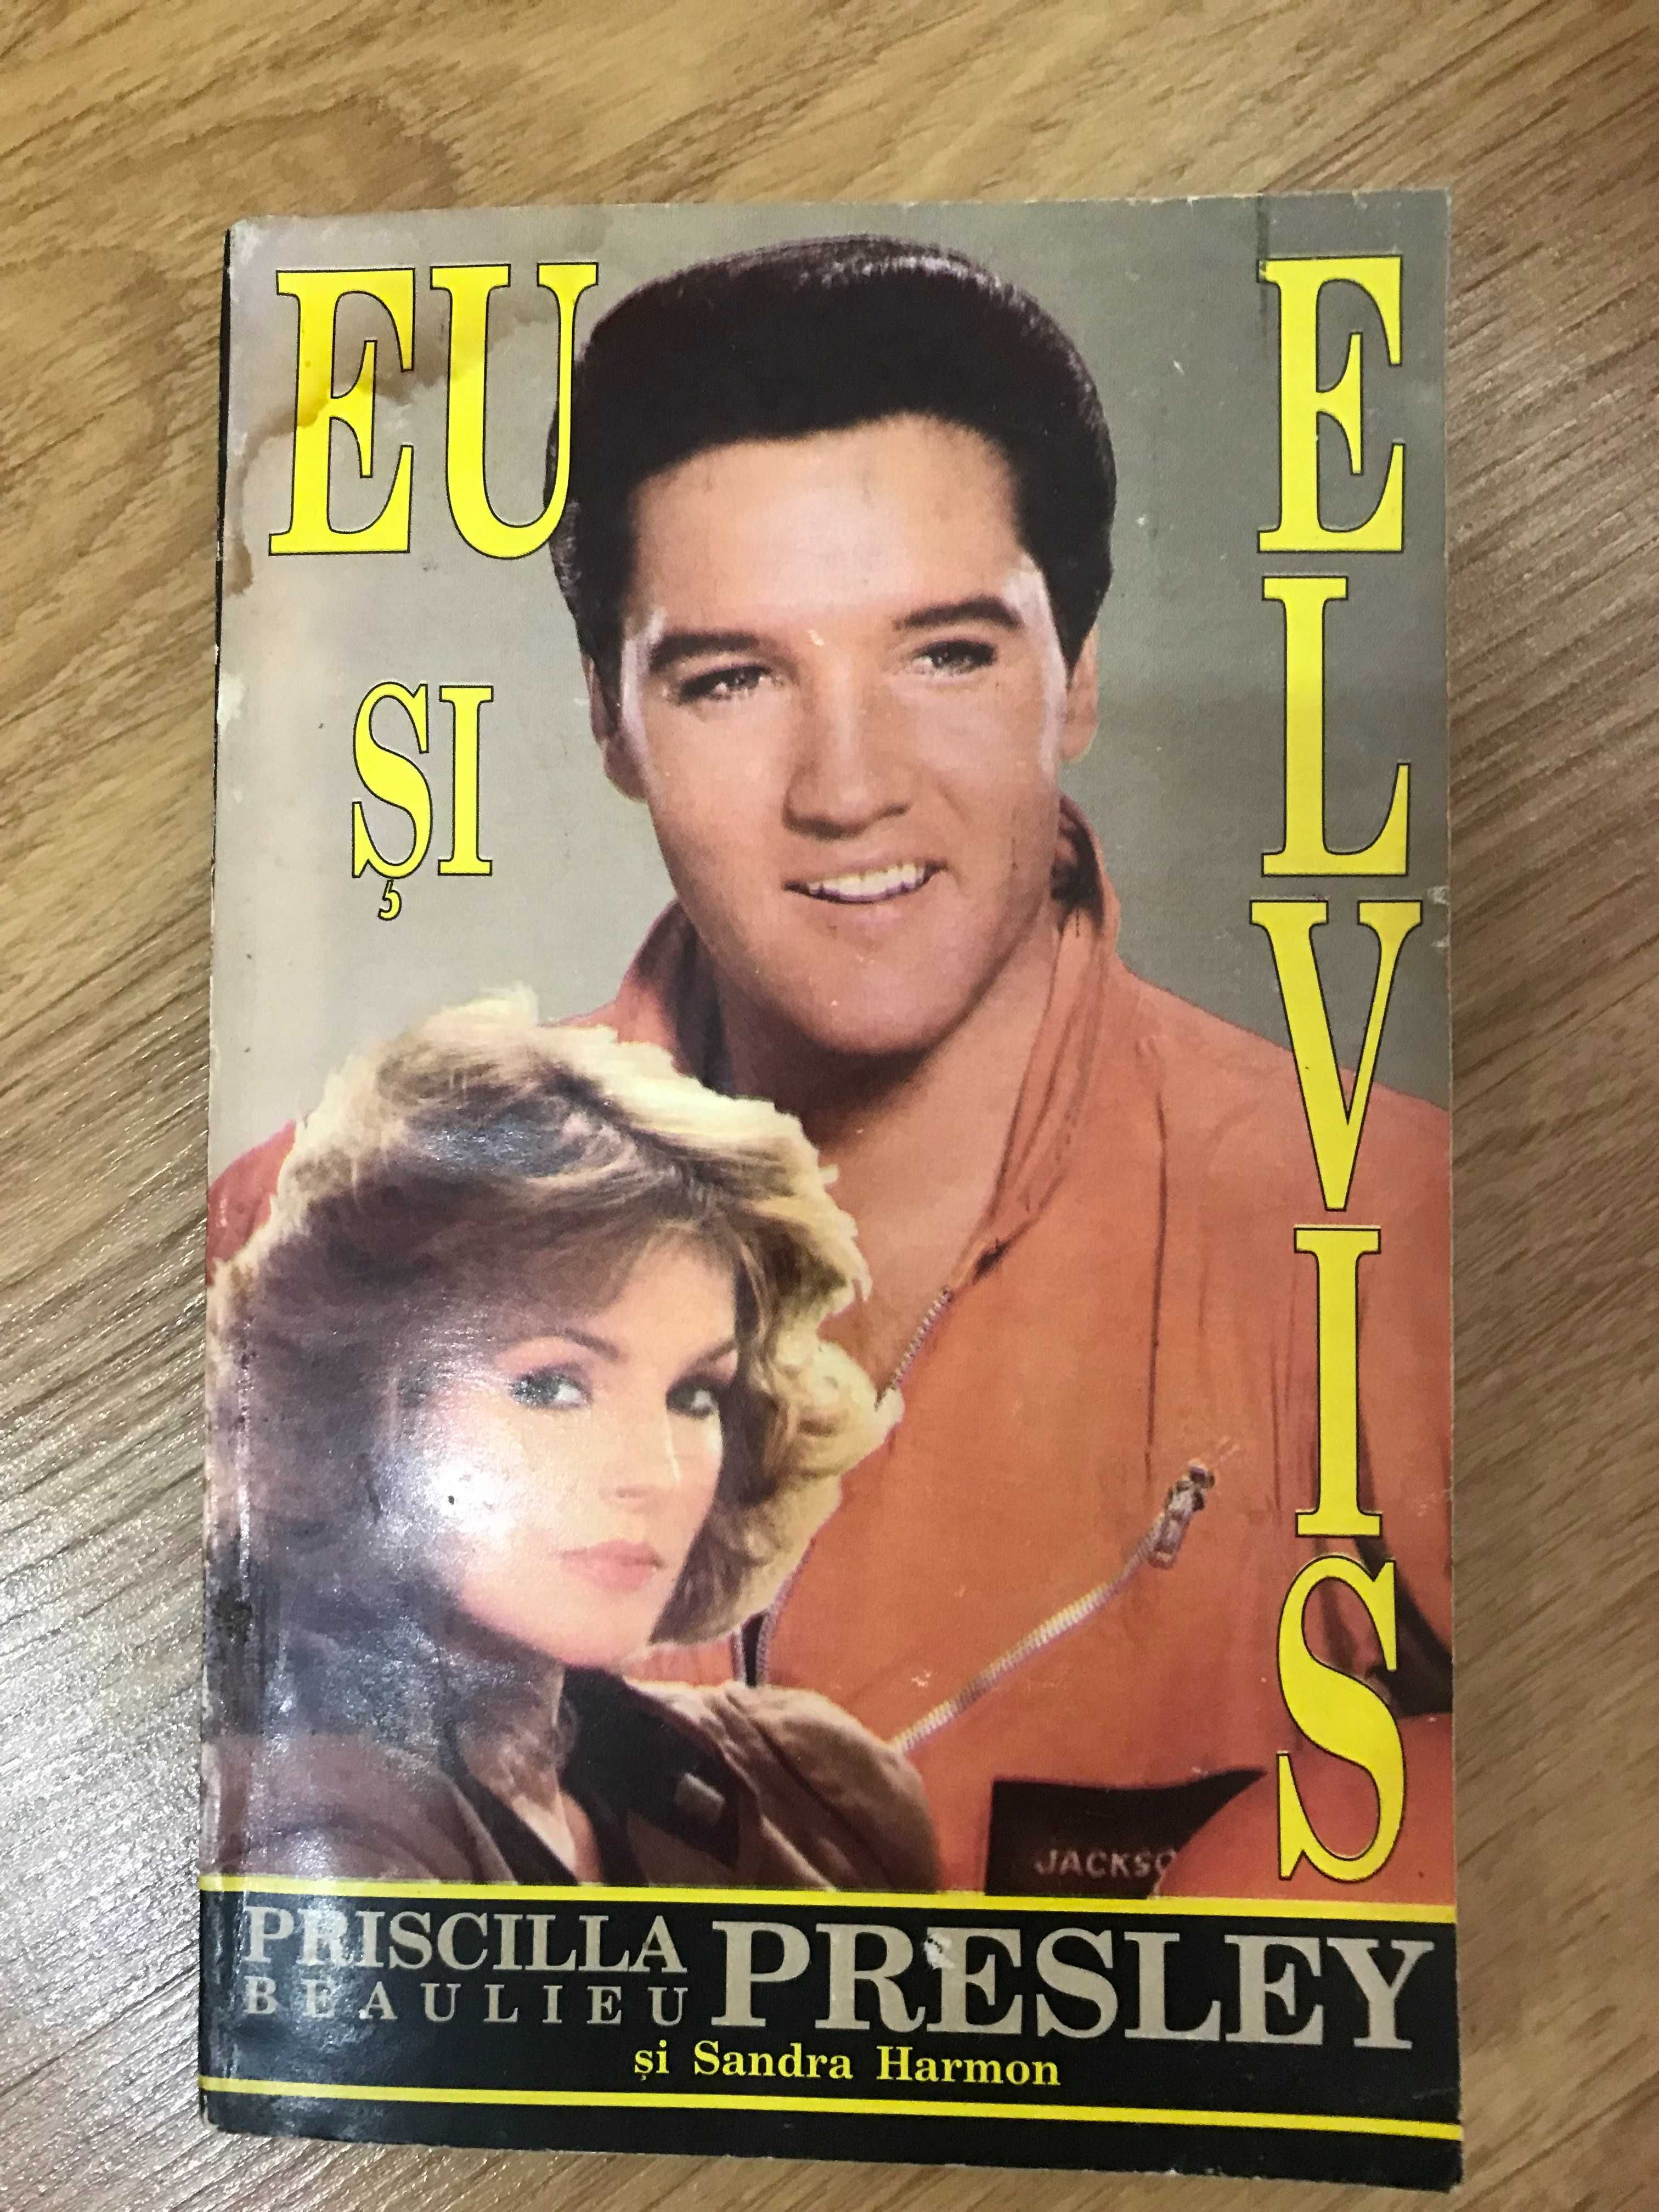 Biografie a lui Elvis Presley de Priscilla Beaulieu Presley - 1993